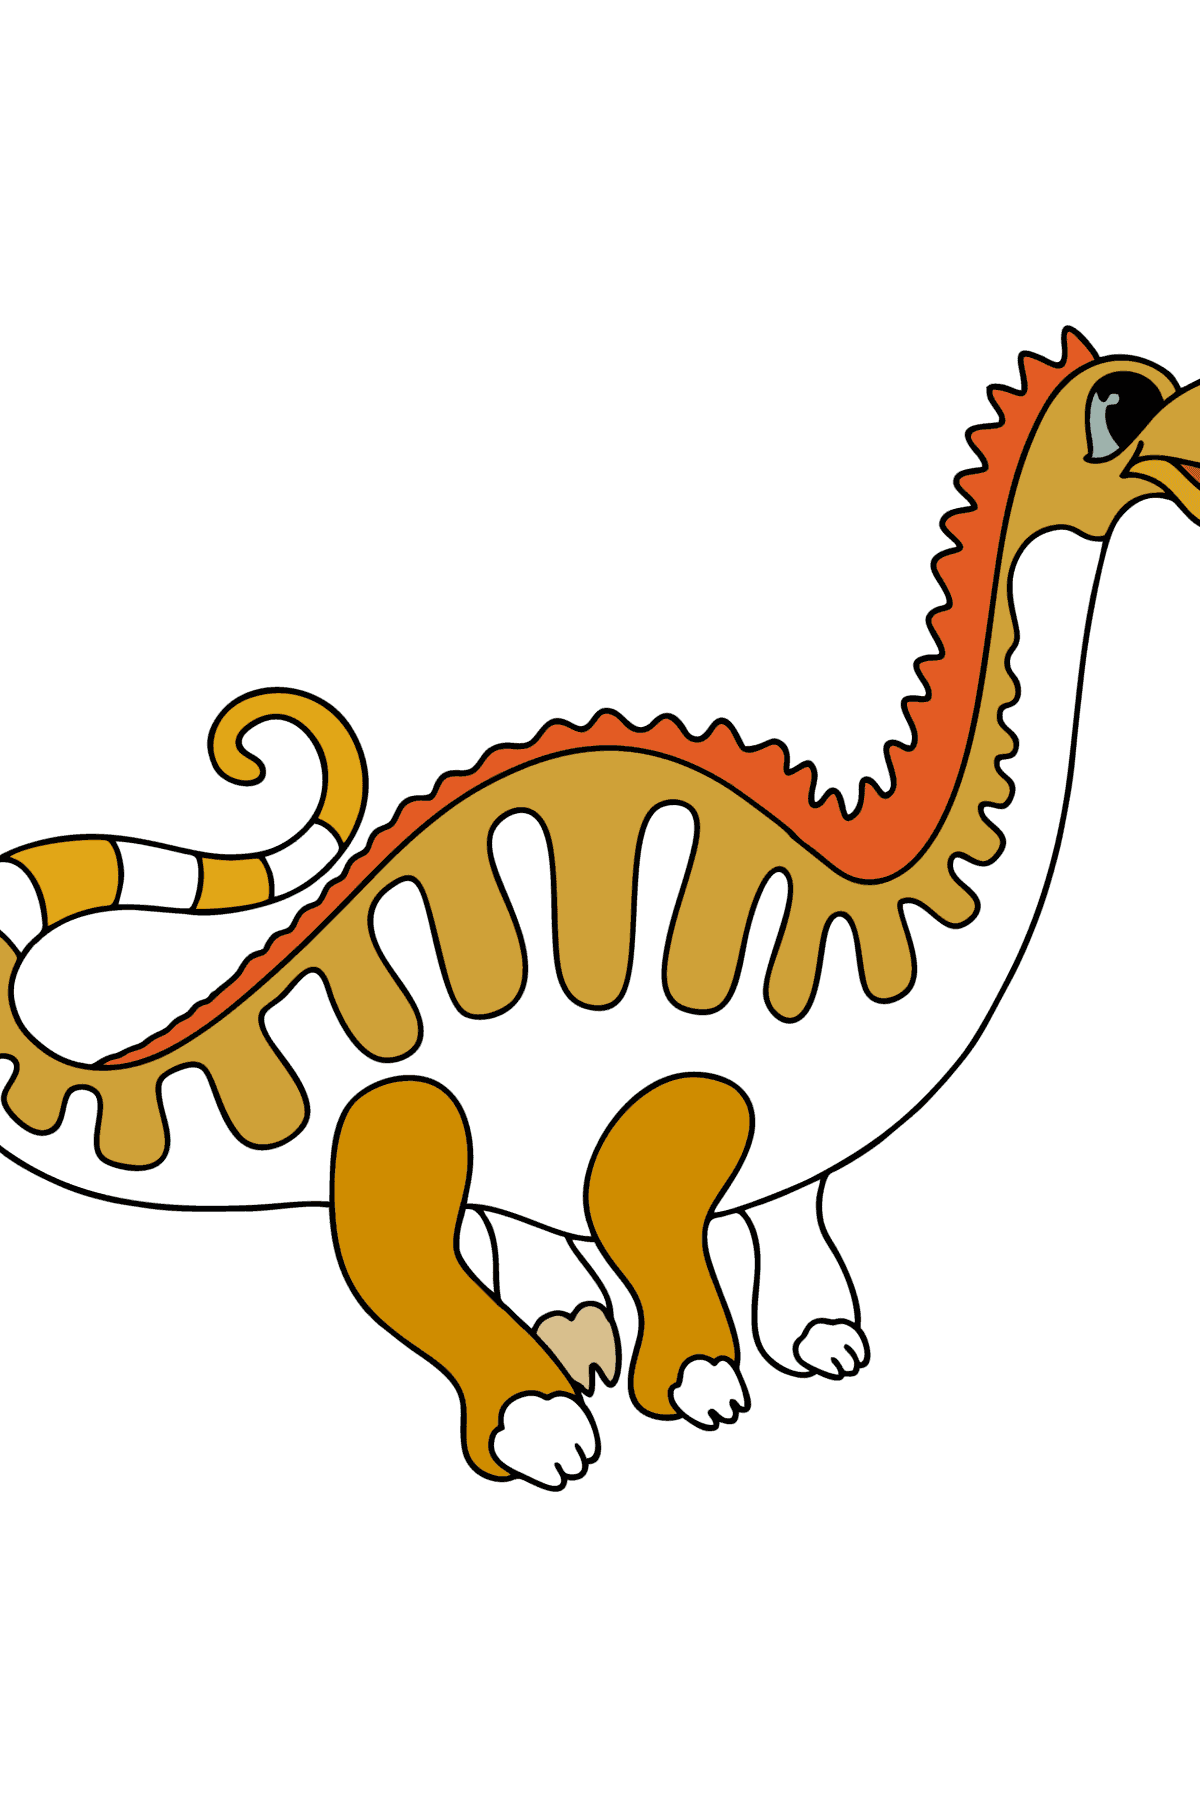 Tegning til farvning apatosaurus - Tegninger til farvelægning for børn